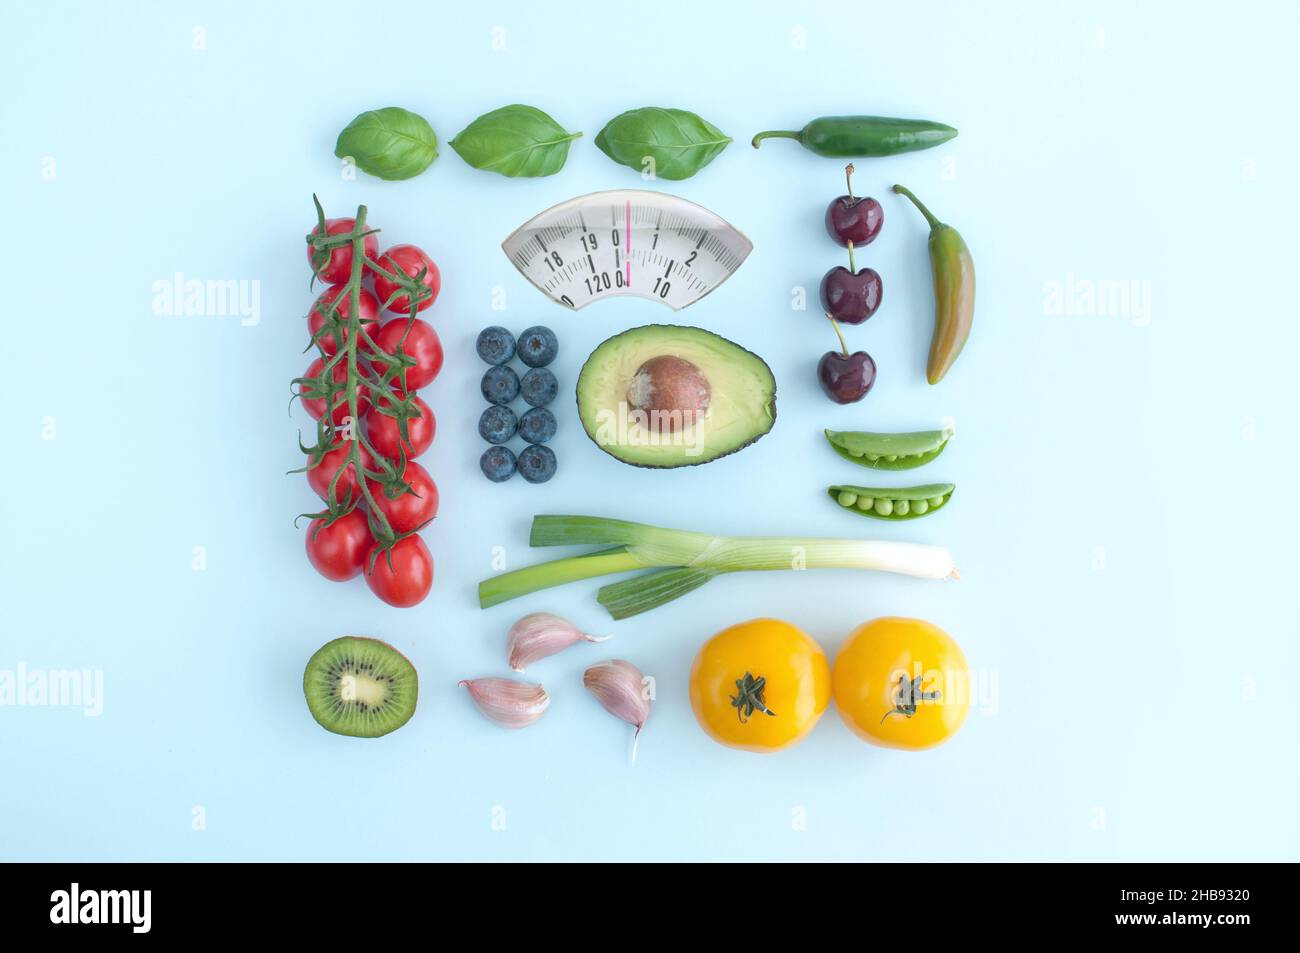 Cuisine salle de bains pèse-personne design à base de fruits et légumes Banque D'Images